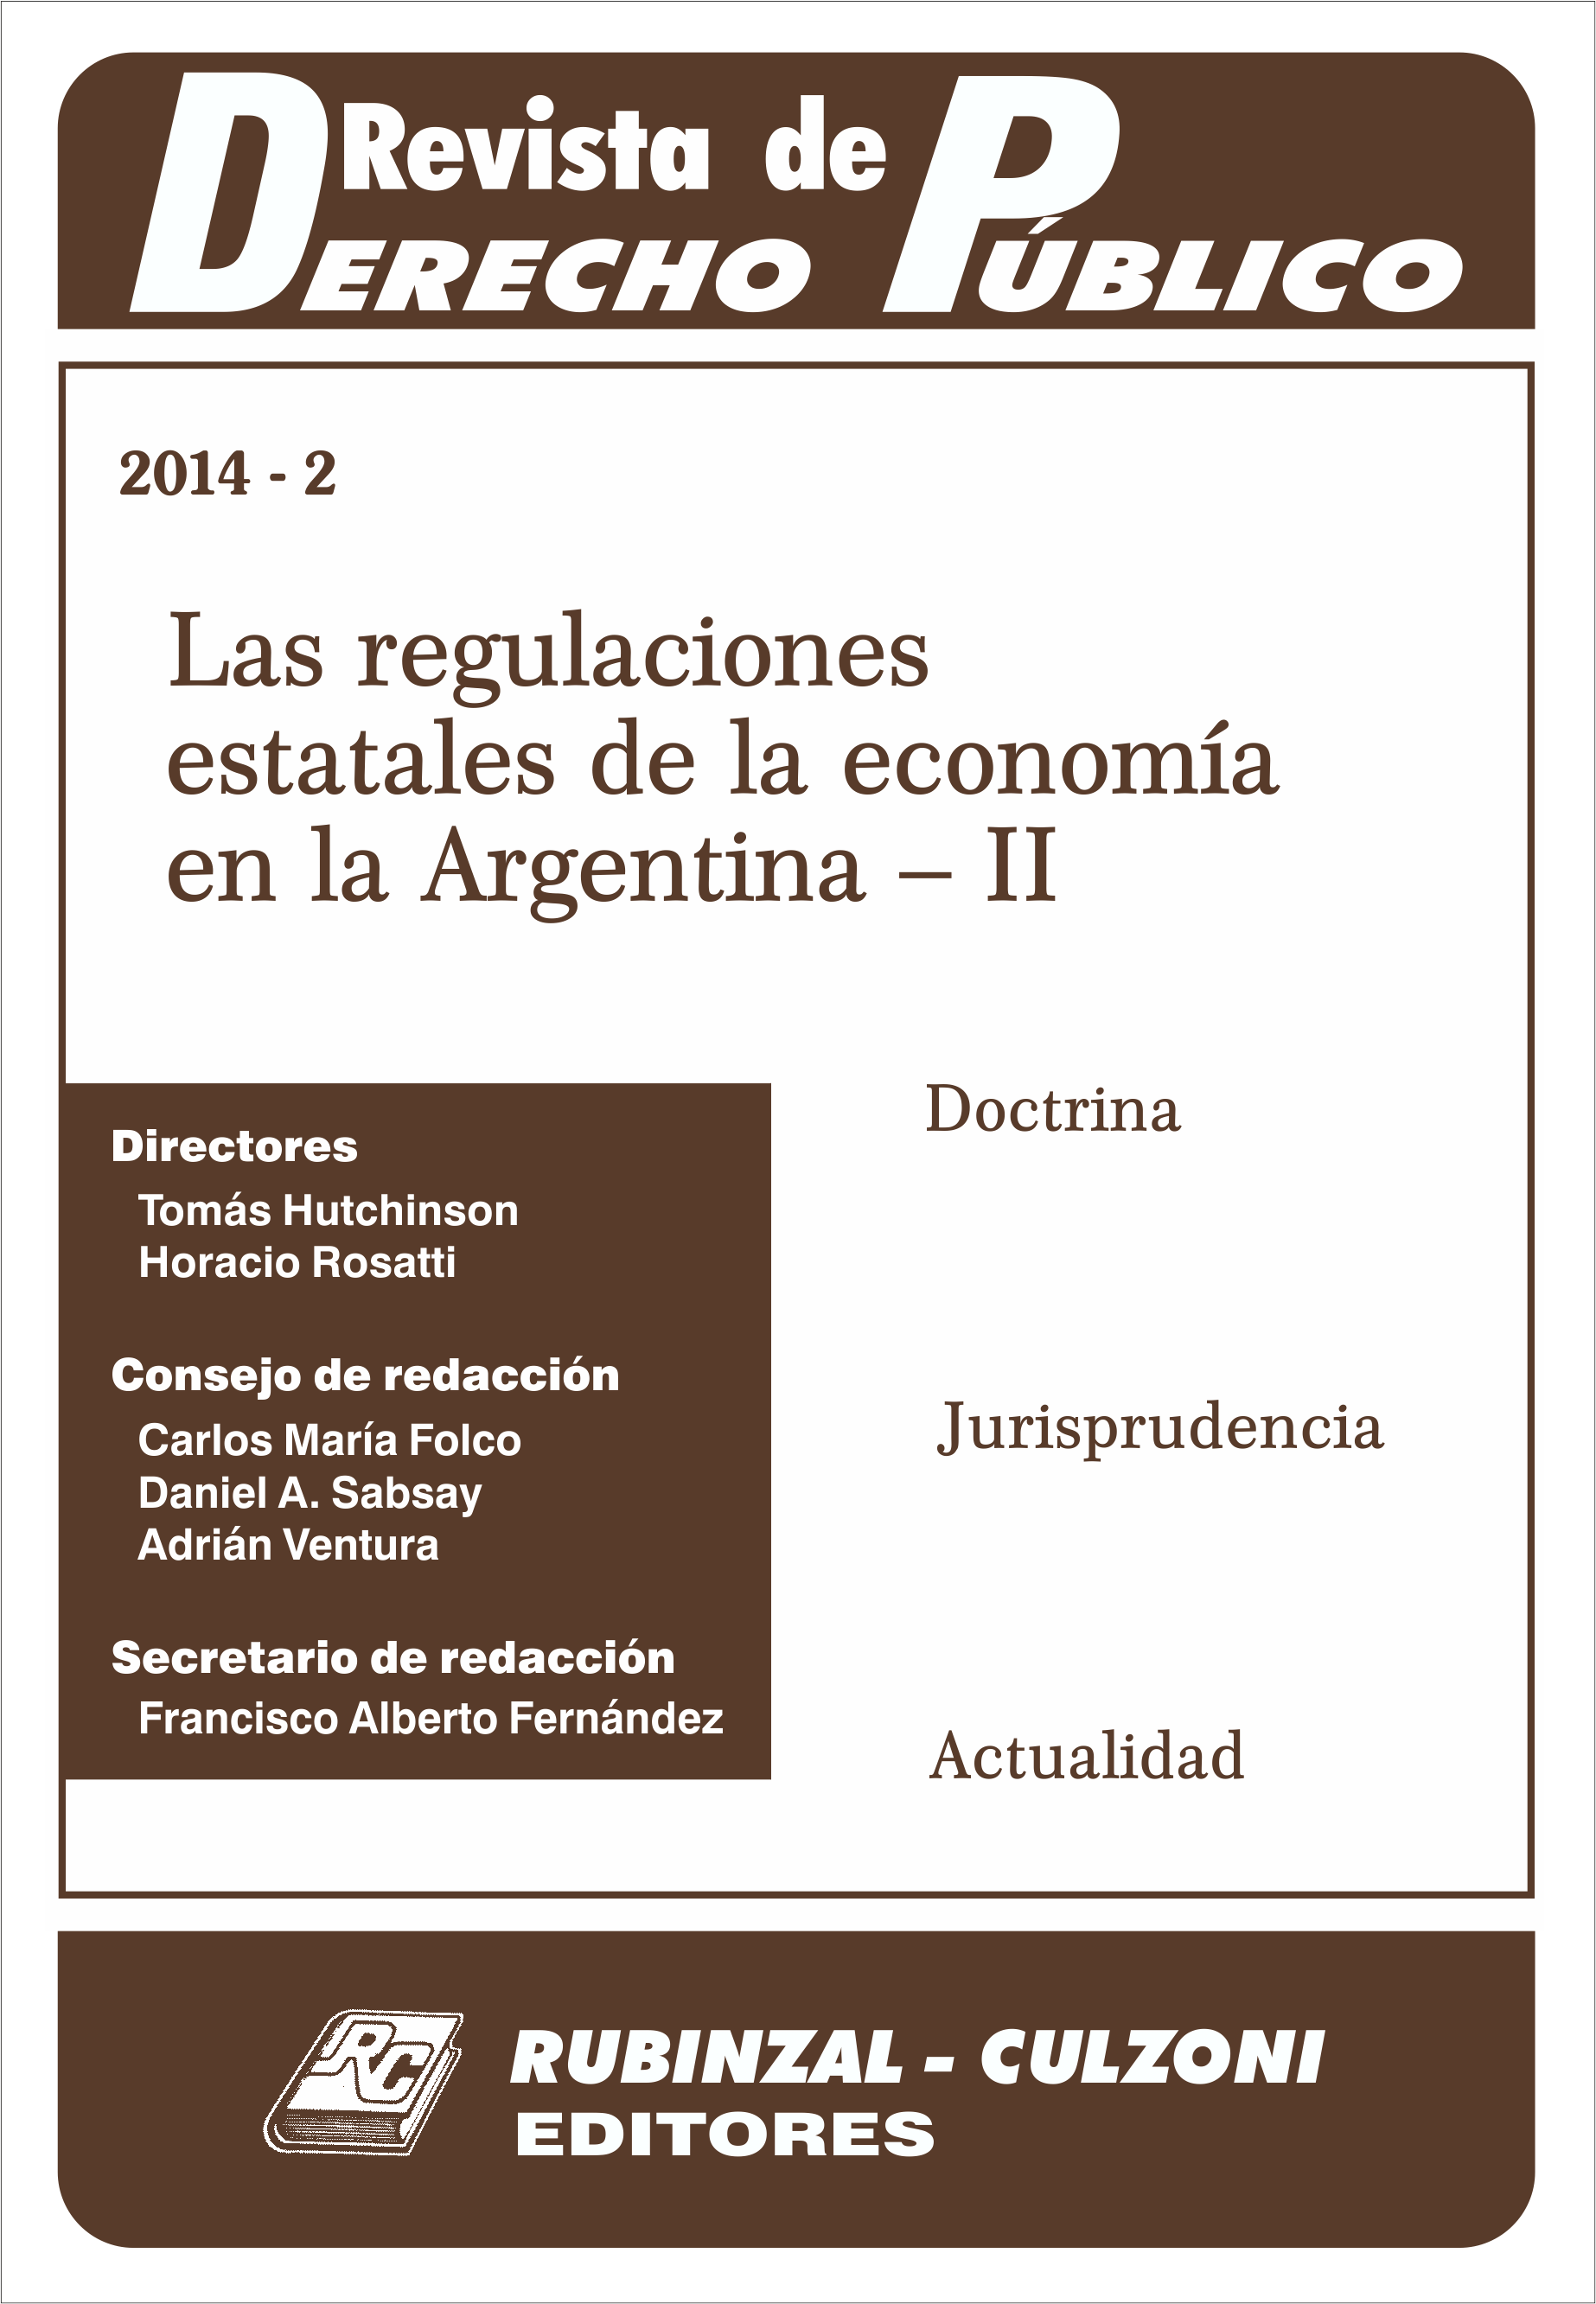 Revista de Derecho Público - Las regulaciones estatales de la economía en la Argentina - II.